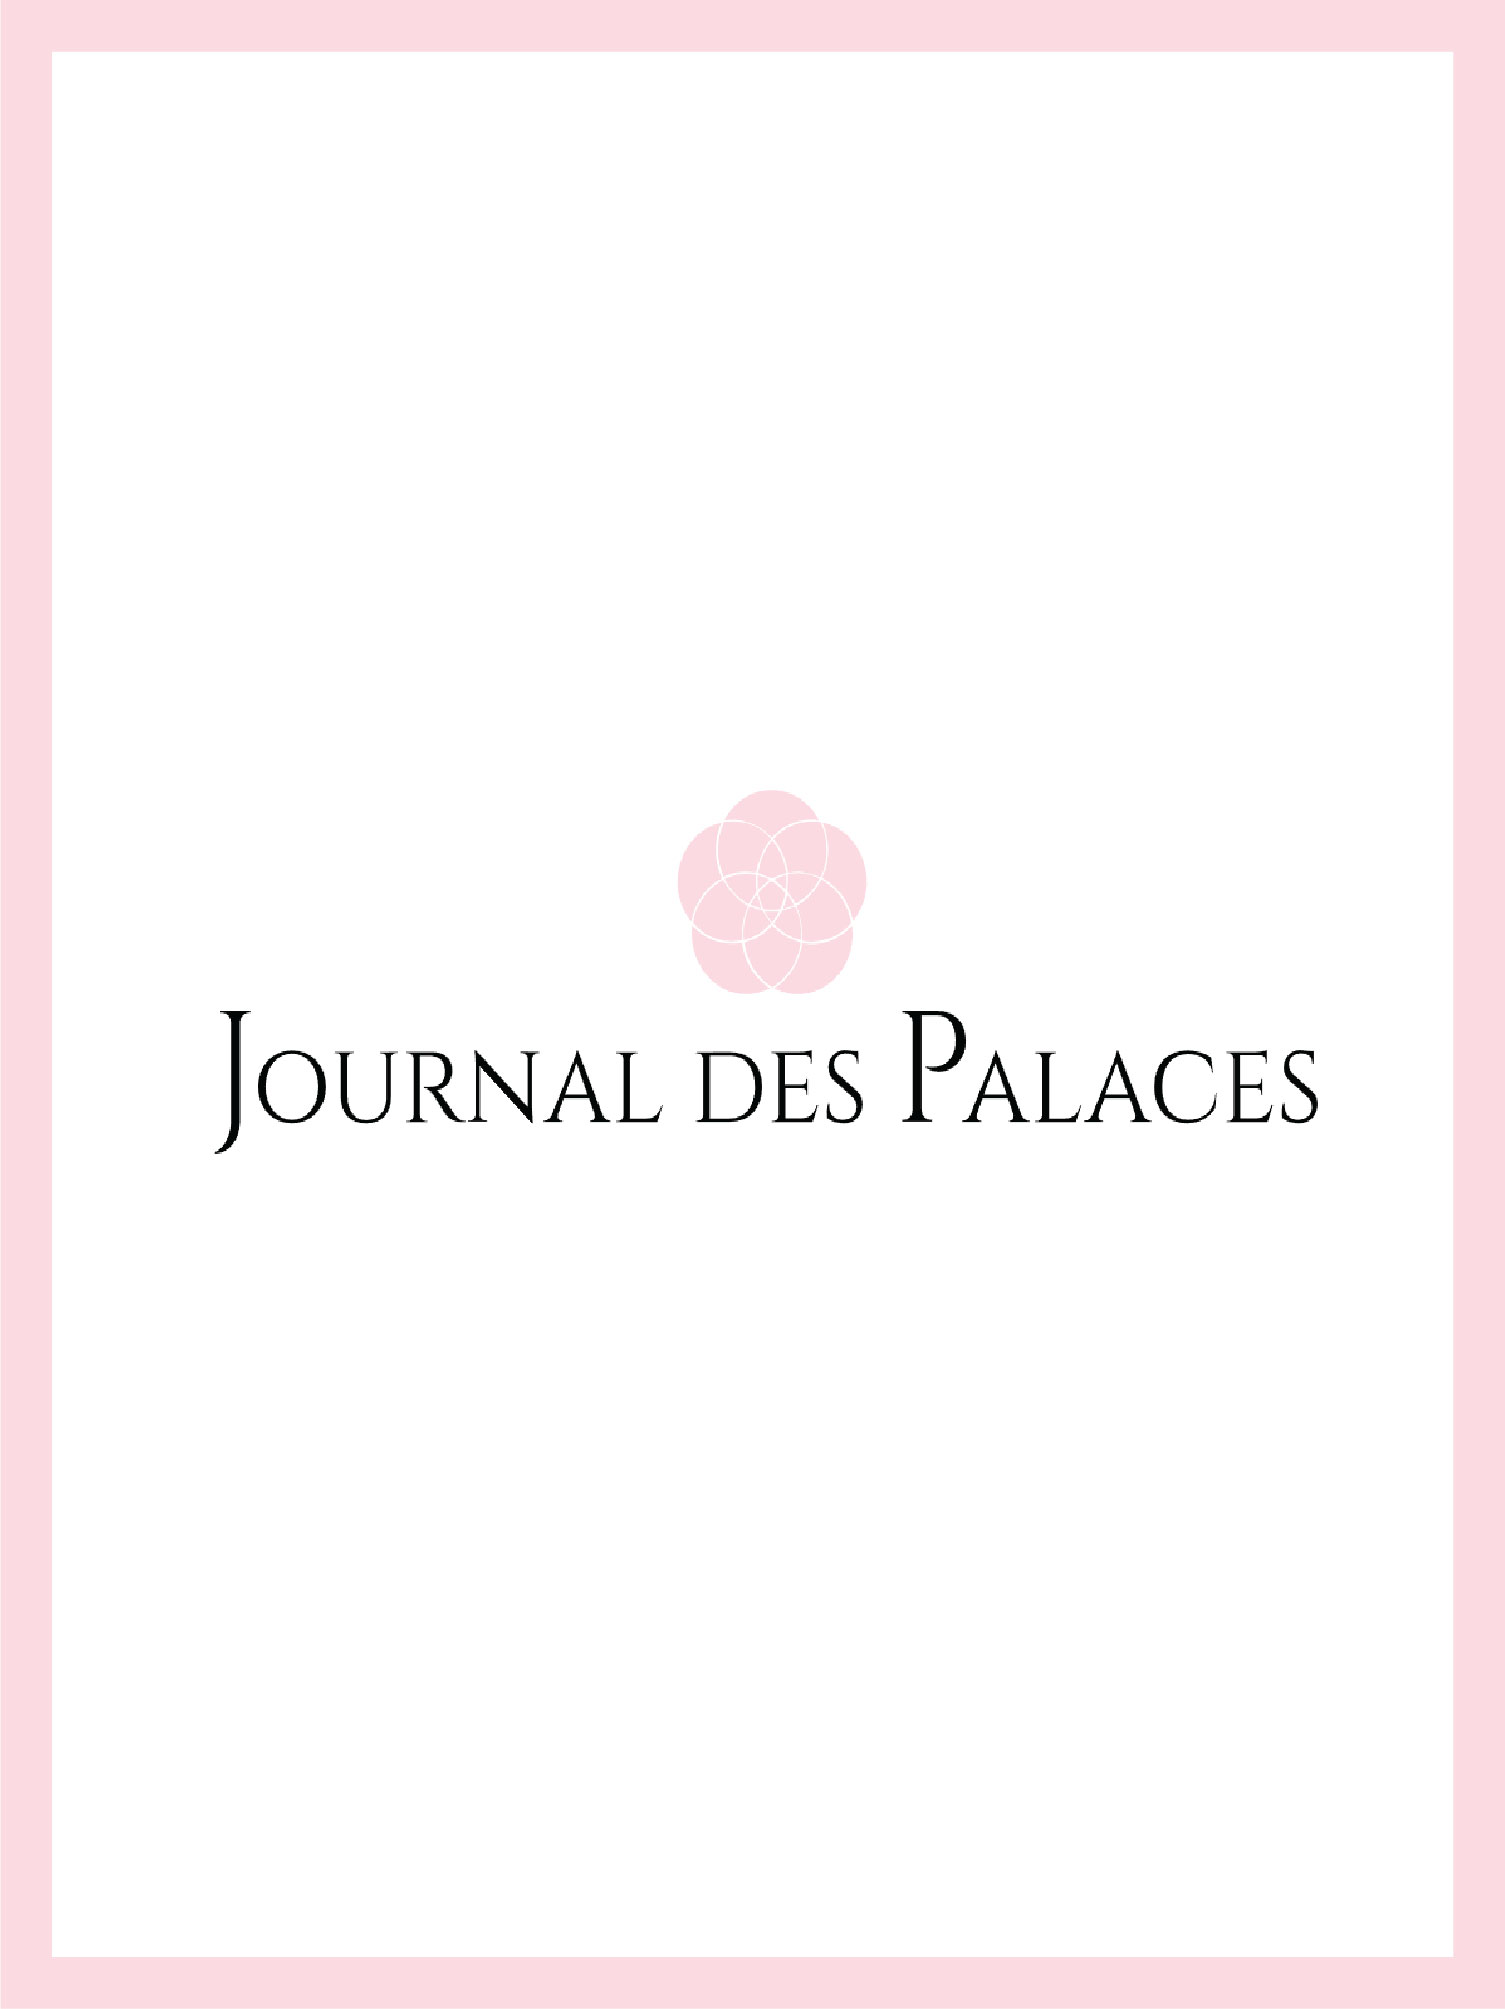 couverture et logo le journal des palaces